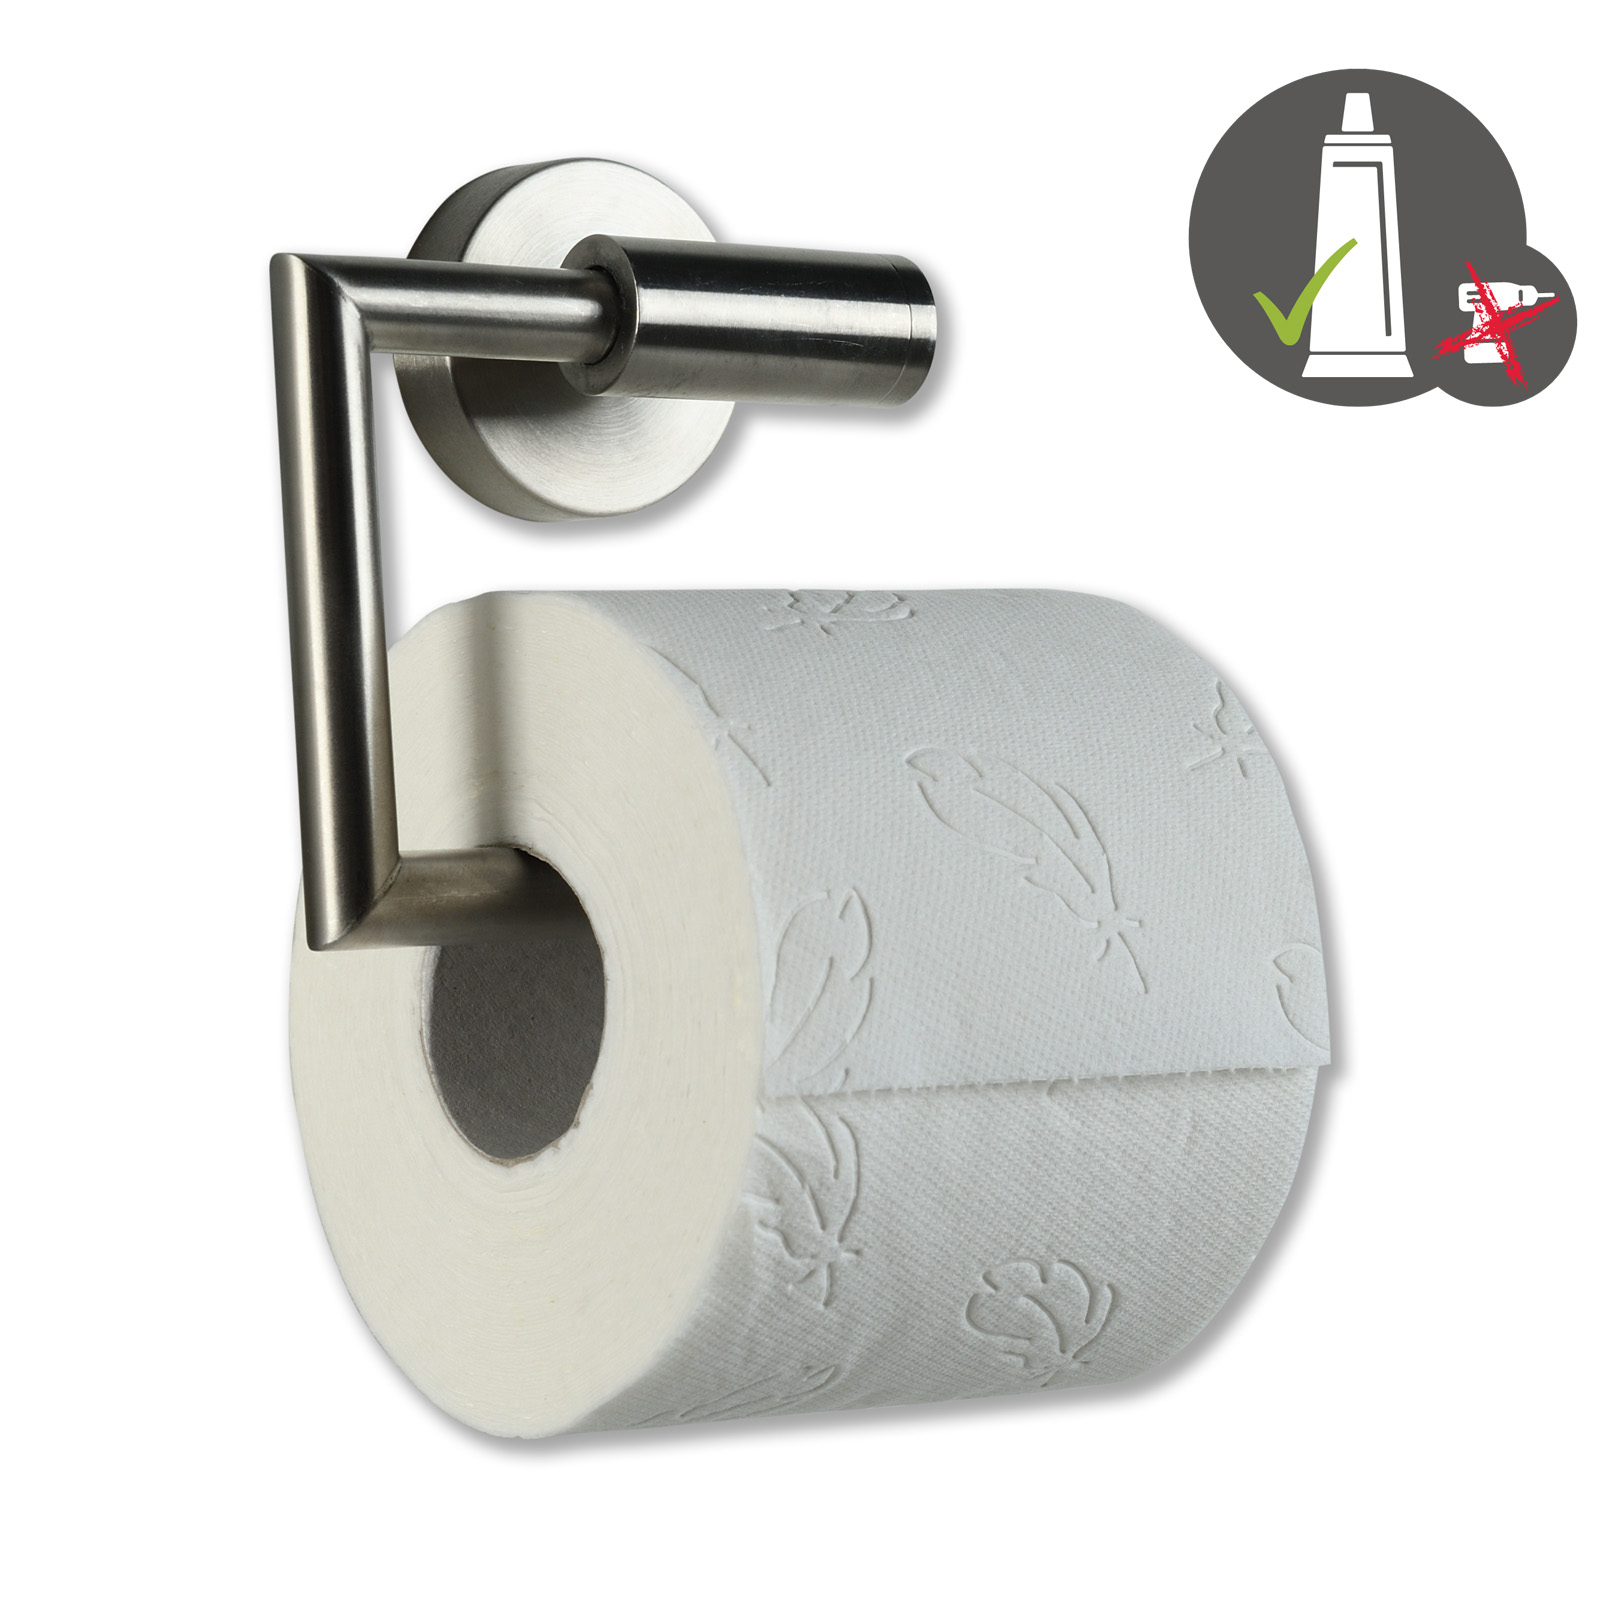 Paket] Badzubehör-Set2 WC Sitz mit Absenkautomatik + Toilettenpapierhalter  mit Klebetechnik + Toilettenbürste mit Klebetechnik